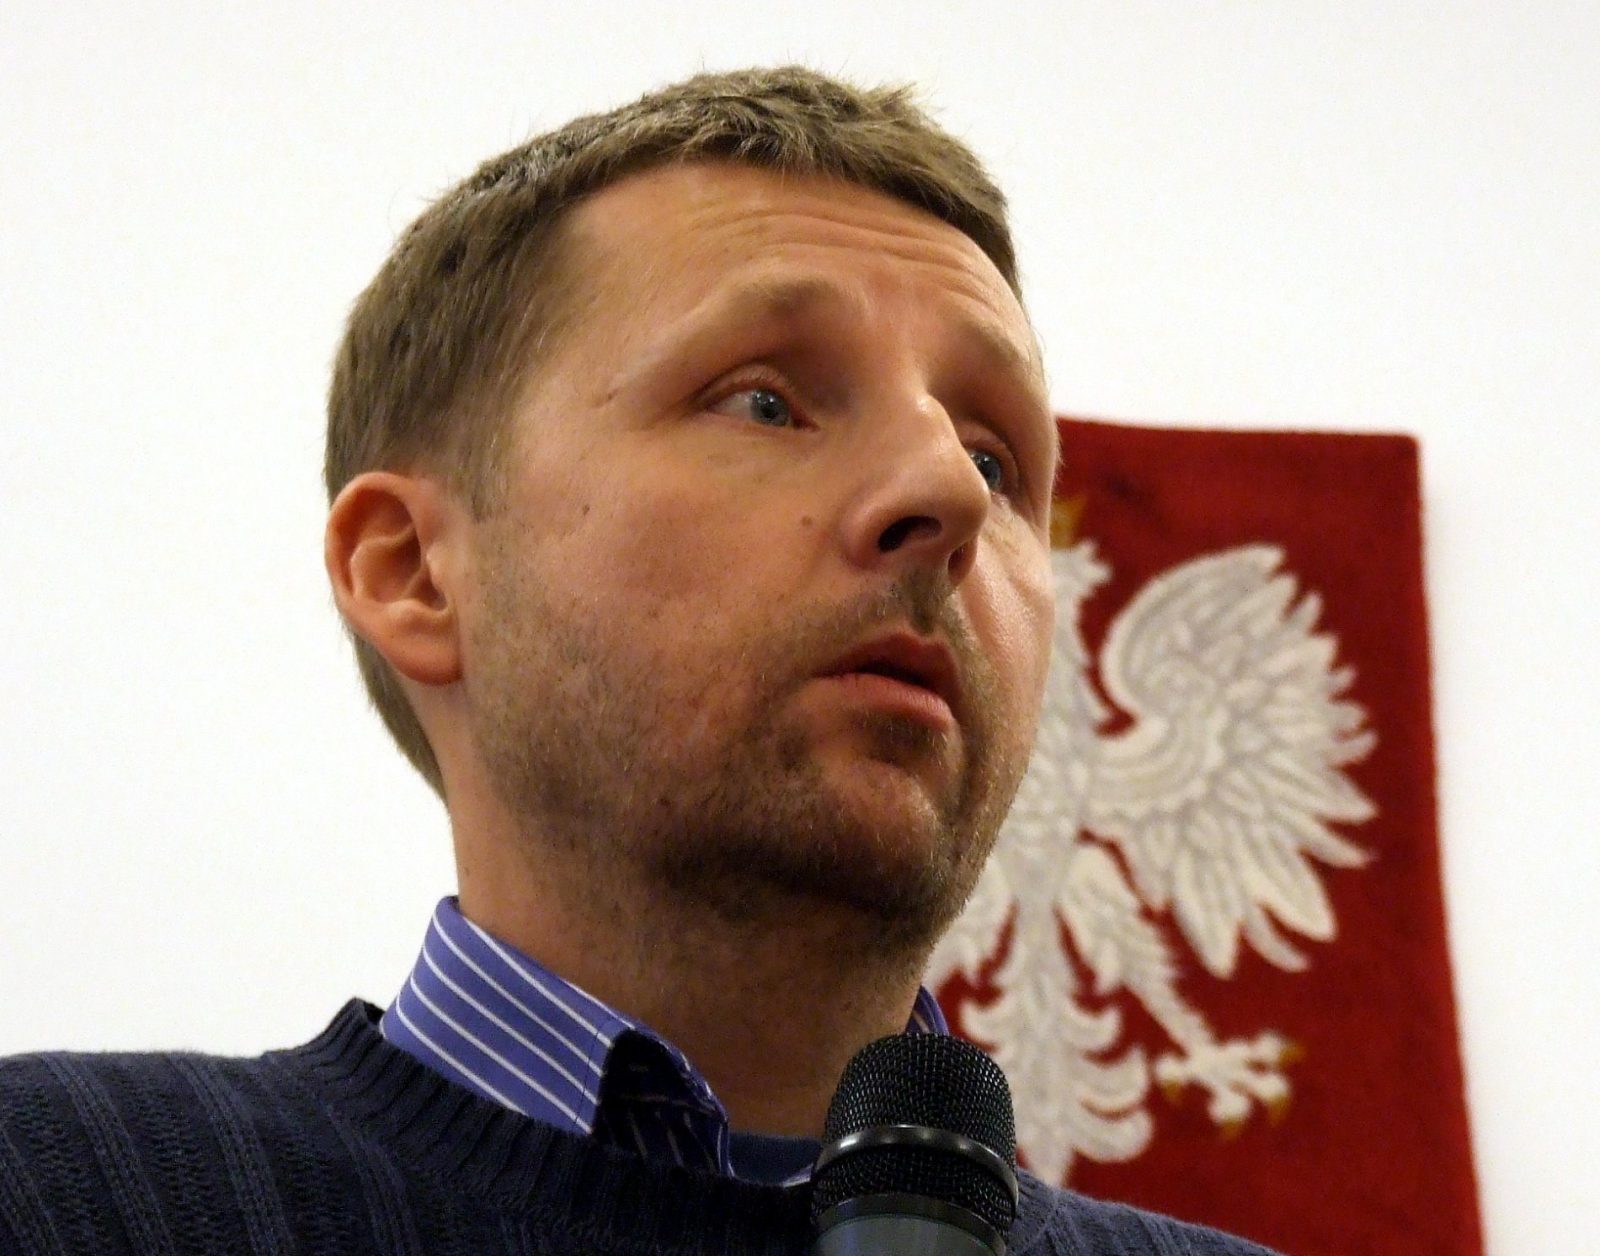 propolski.pl: Wpis Migalskiego rozwścieczył internautów: "Sorki prawicowcy, ale po prostu jesteście od nas mniej inteligentni"